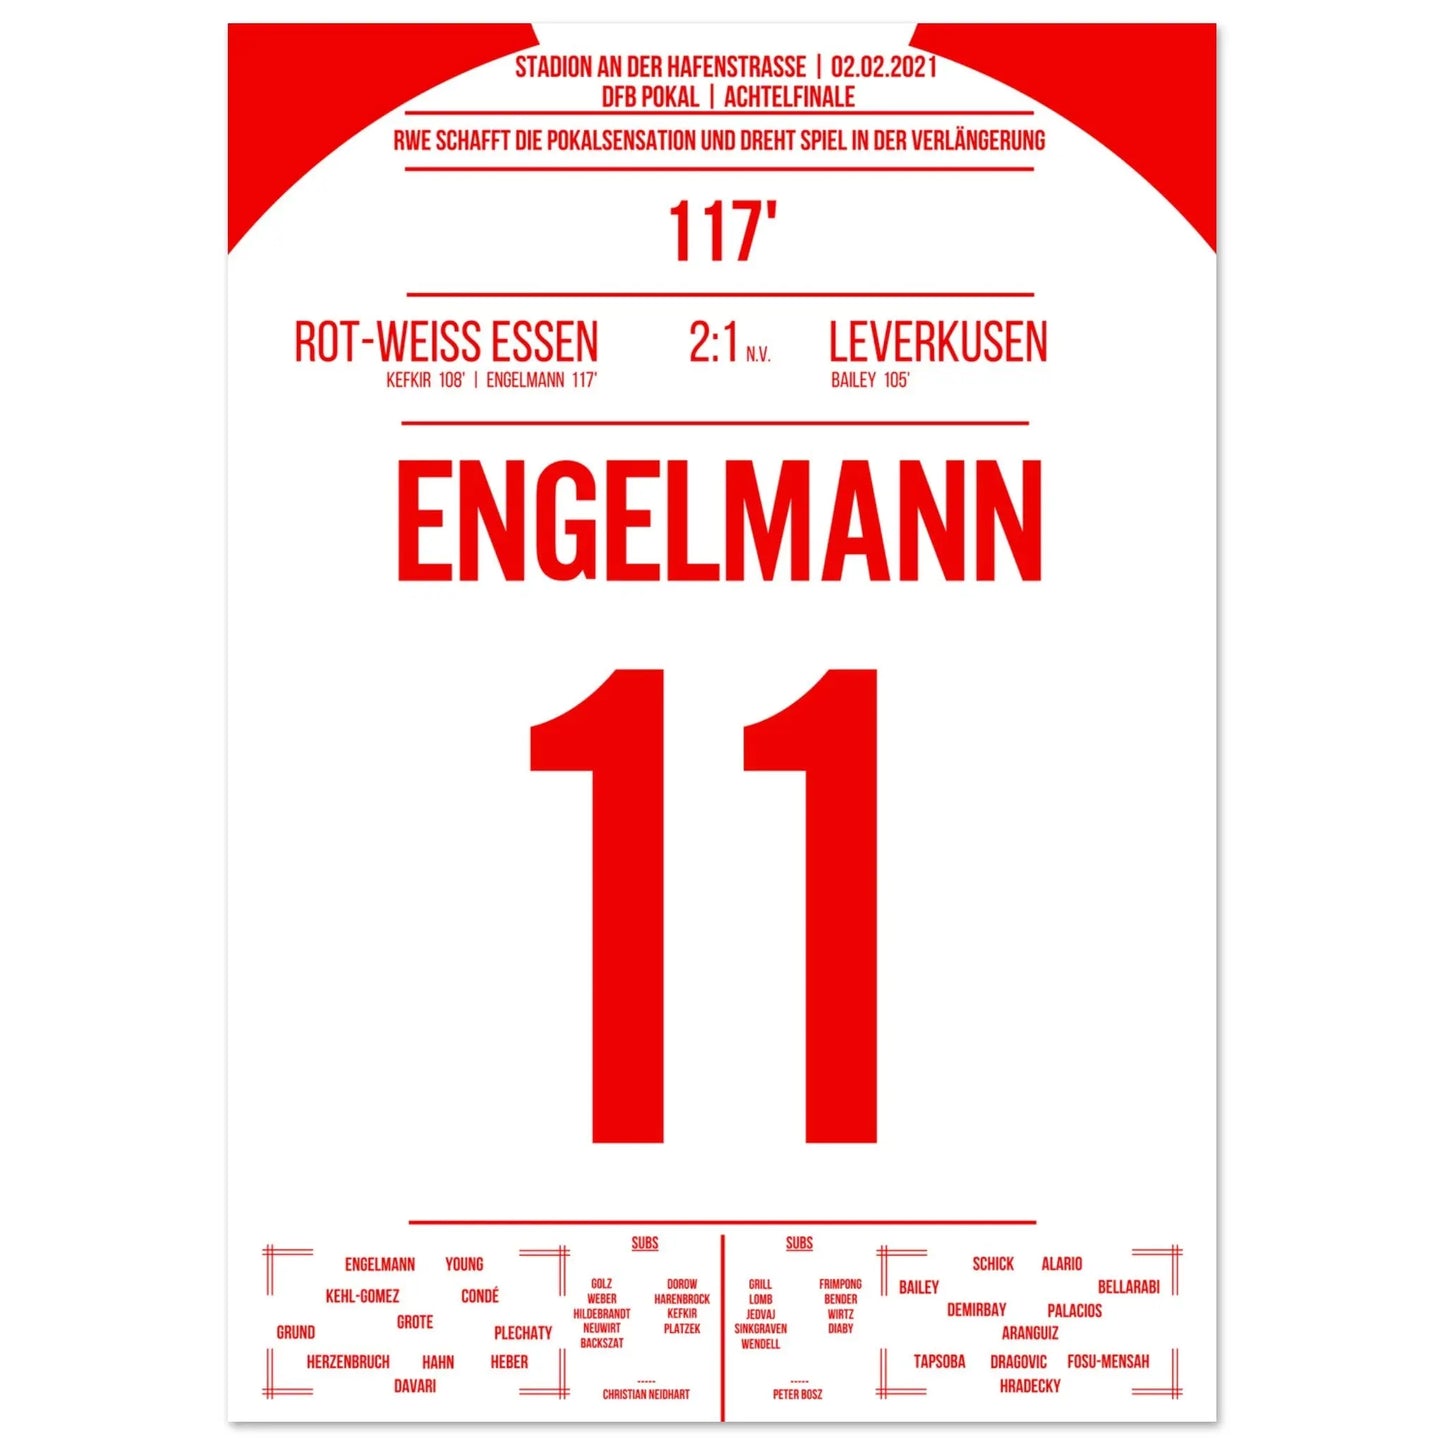 Essen's bekersensatie tegen Leverkusen in 2021